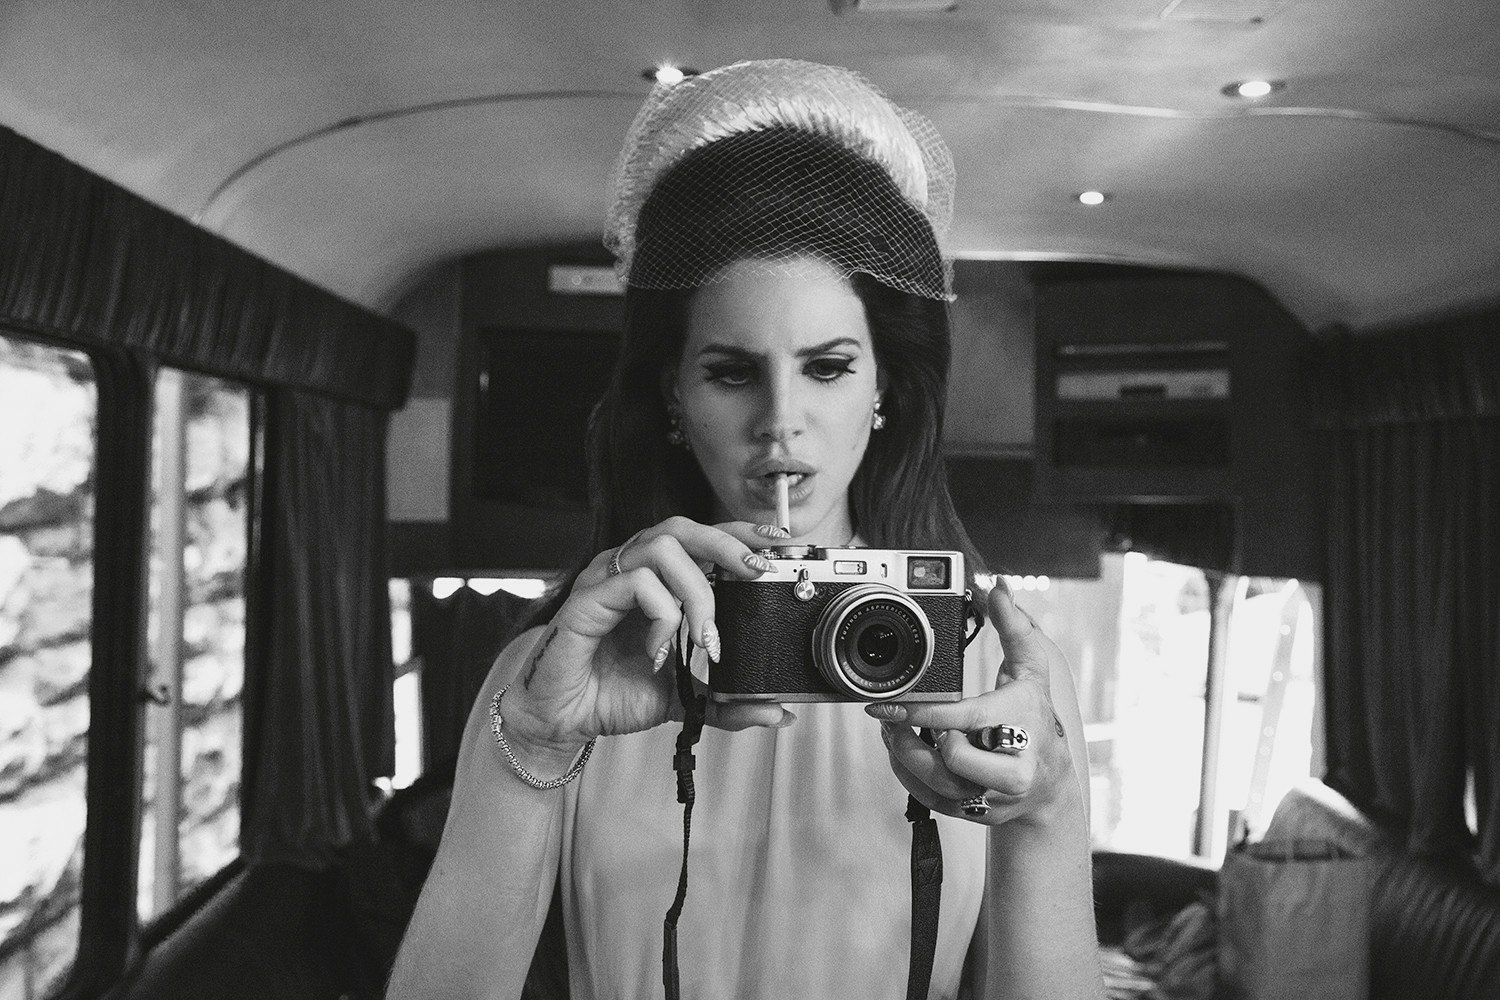 Thức tỉnh với bộ sưu tập hình nền tuyệt đẹp của Lana Del Rey. Mỗi chi tiết trên hình ảnh đều được thiết kế tỉ mỉ và đẹp mắt, mang đến cho người dùng sự thư giãn và cảm hứng mỗi khi nhìn vào điện thoại của mình. 